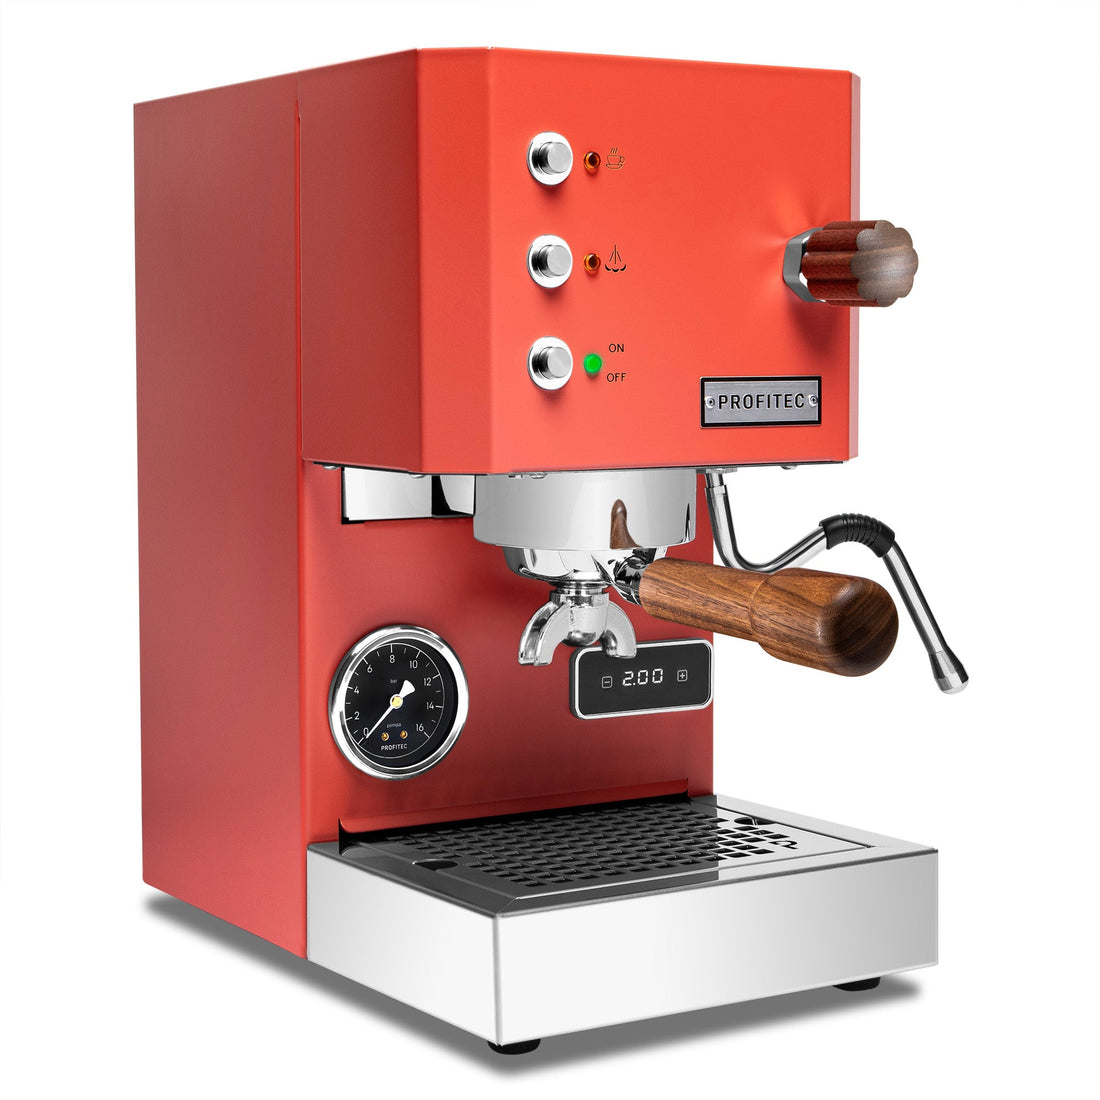 Profitec GO Espresso Machine - Red with Walnut